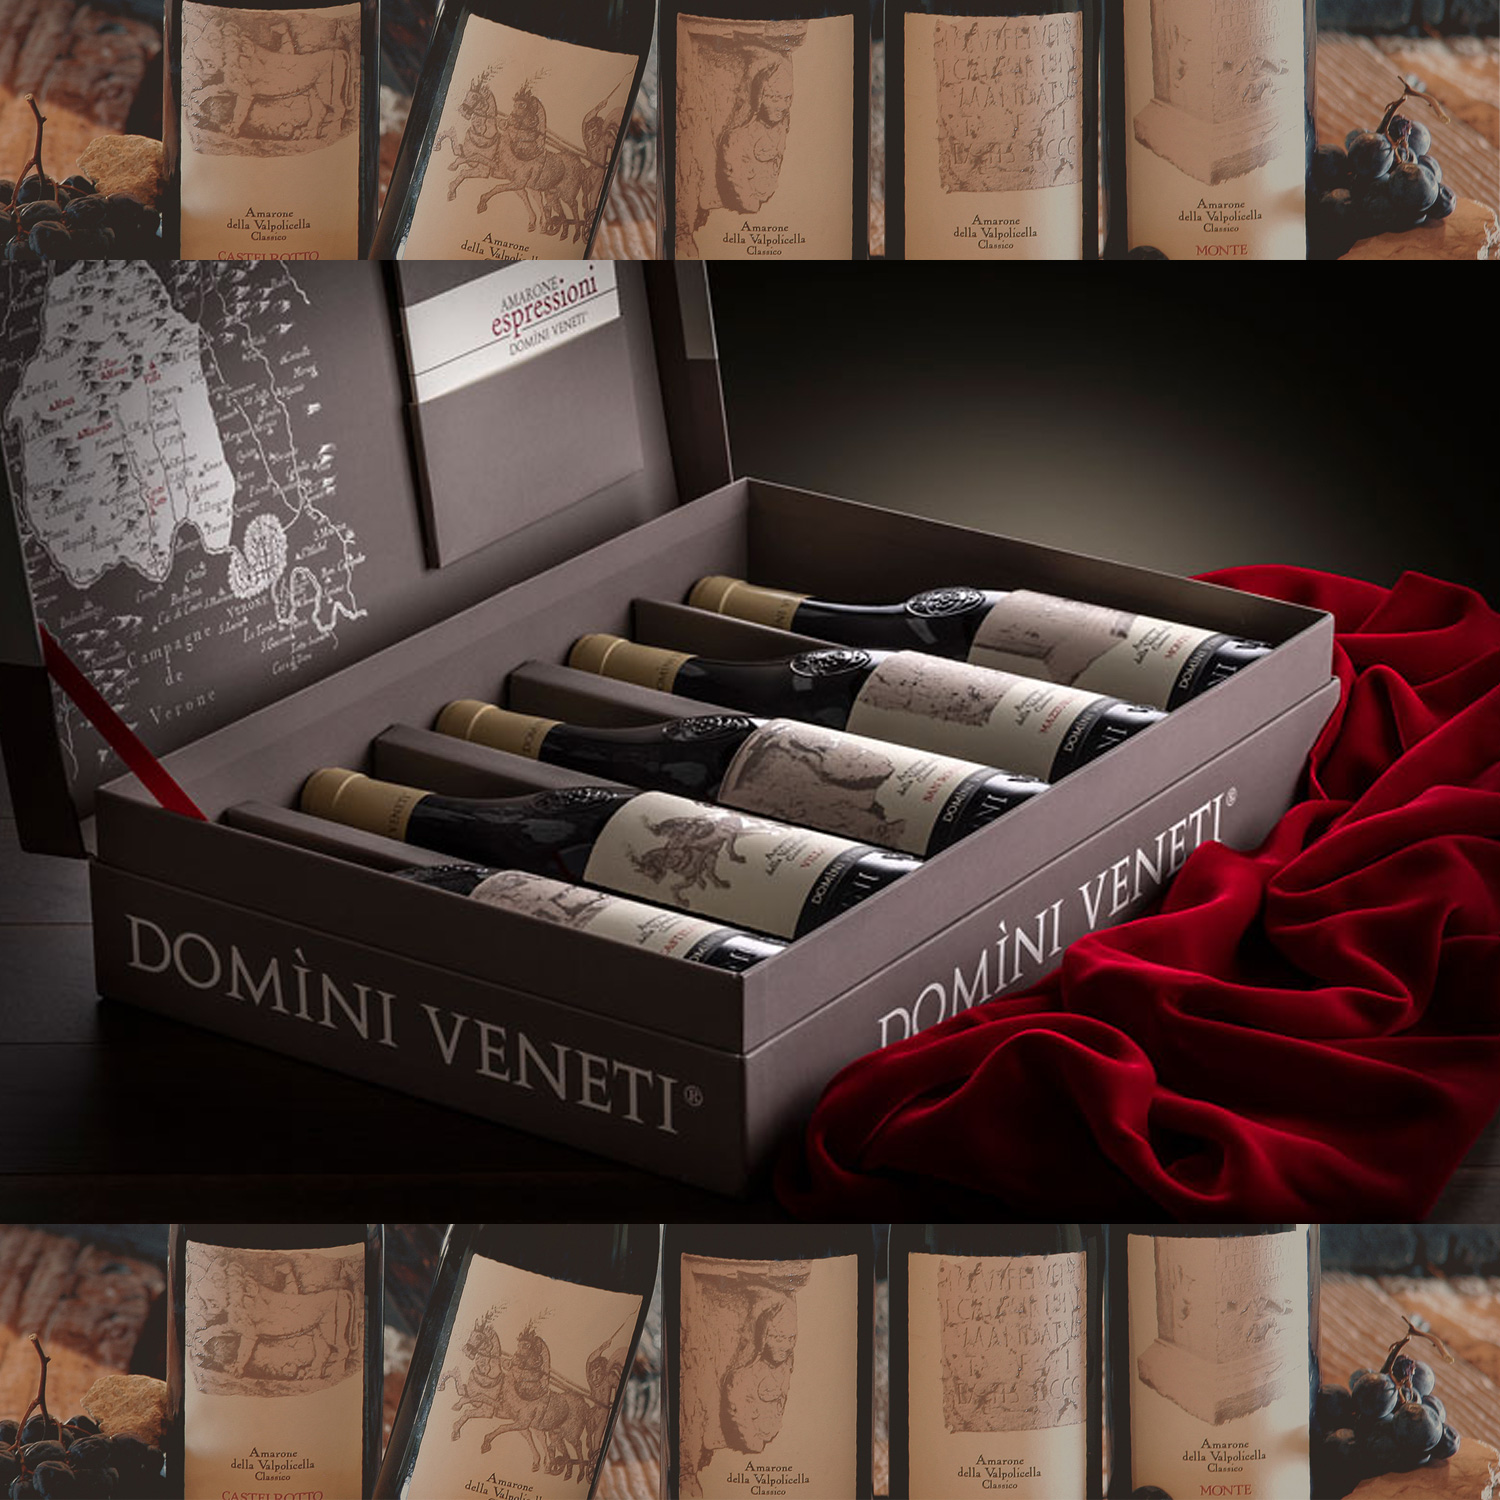 5 CRUS Amarone della Valpolicella DOCG Classico Espressioni 2015 Domini Veneti